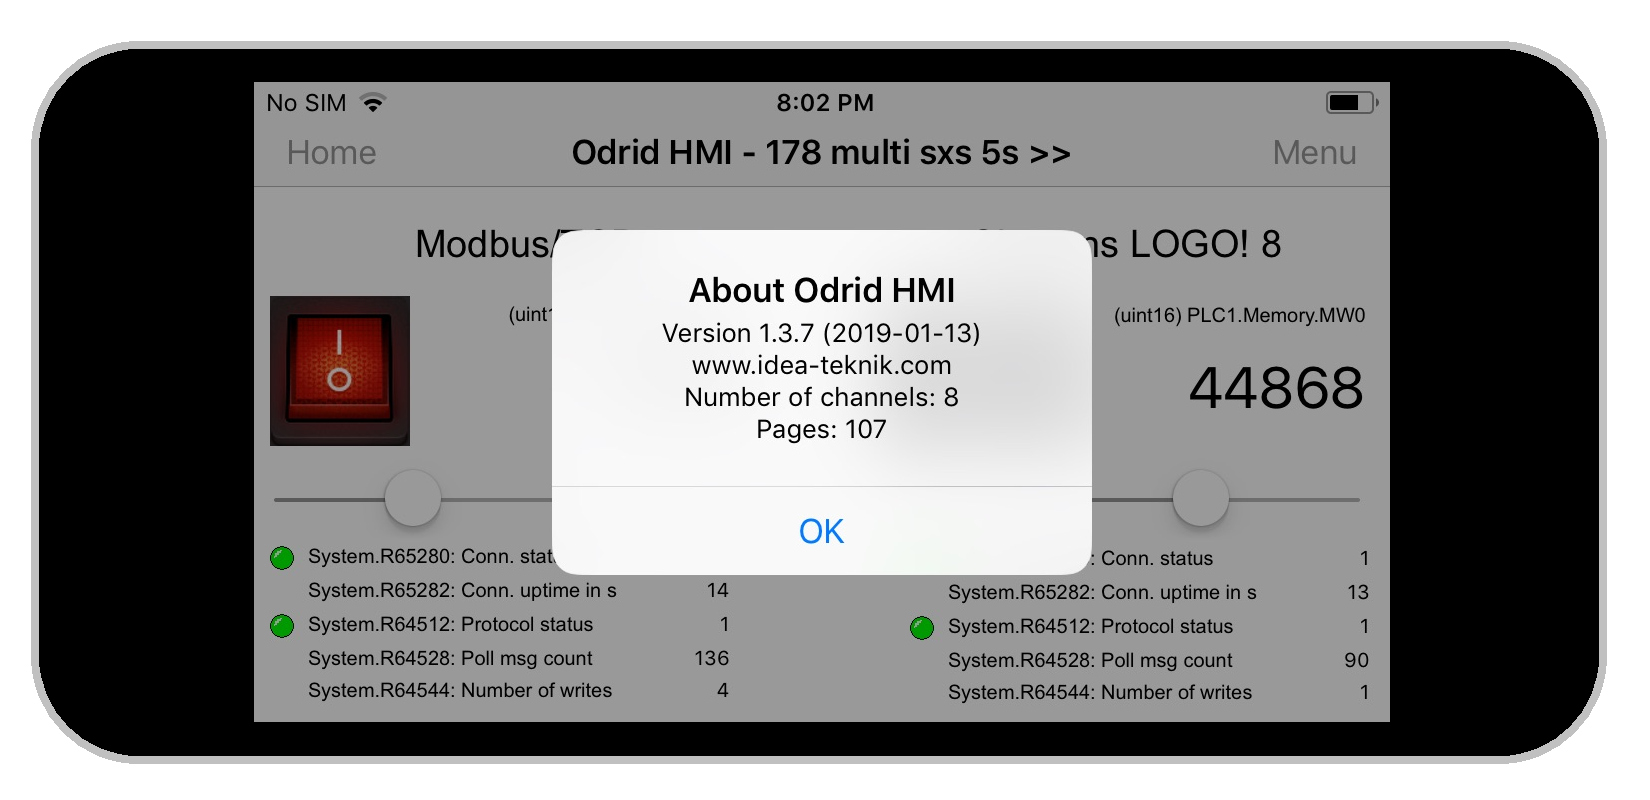 Odrid HMI 1.3.7 on an Iphone 5s